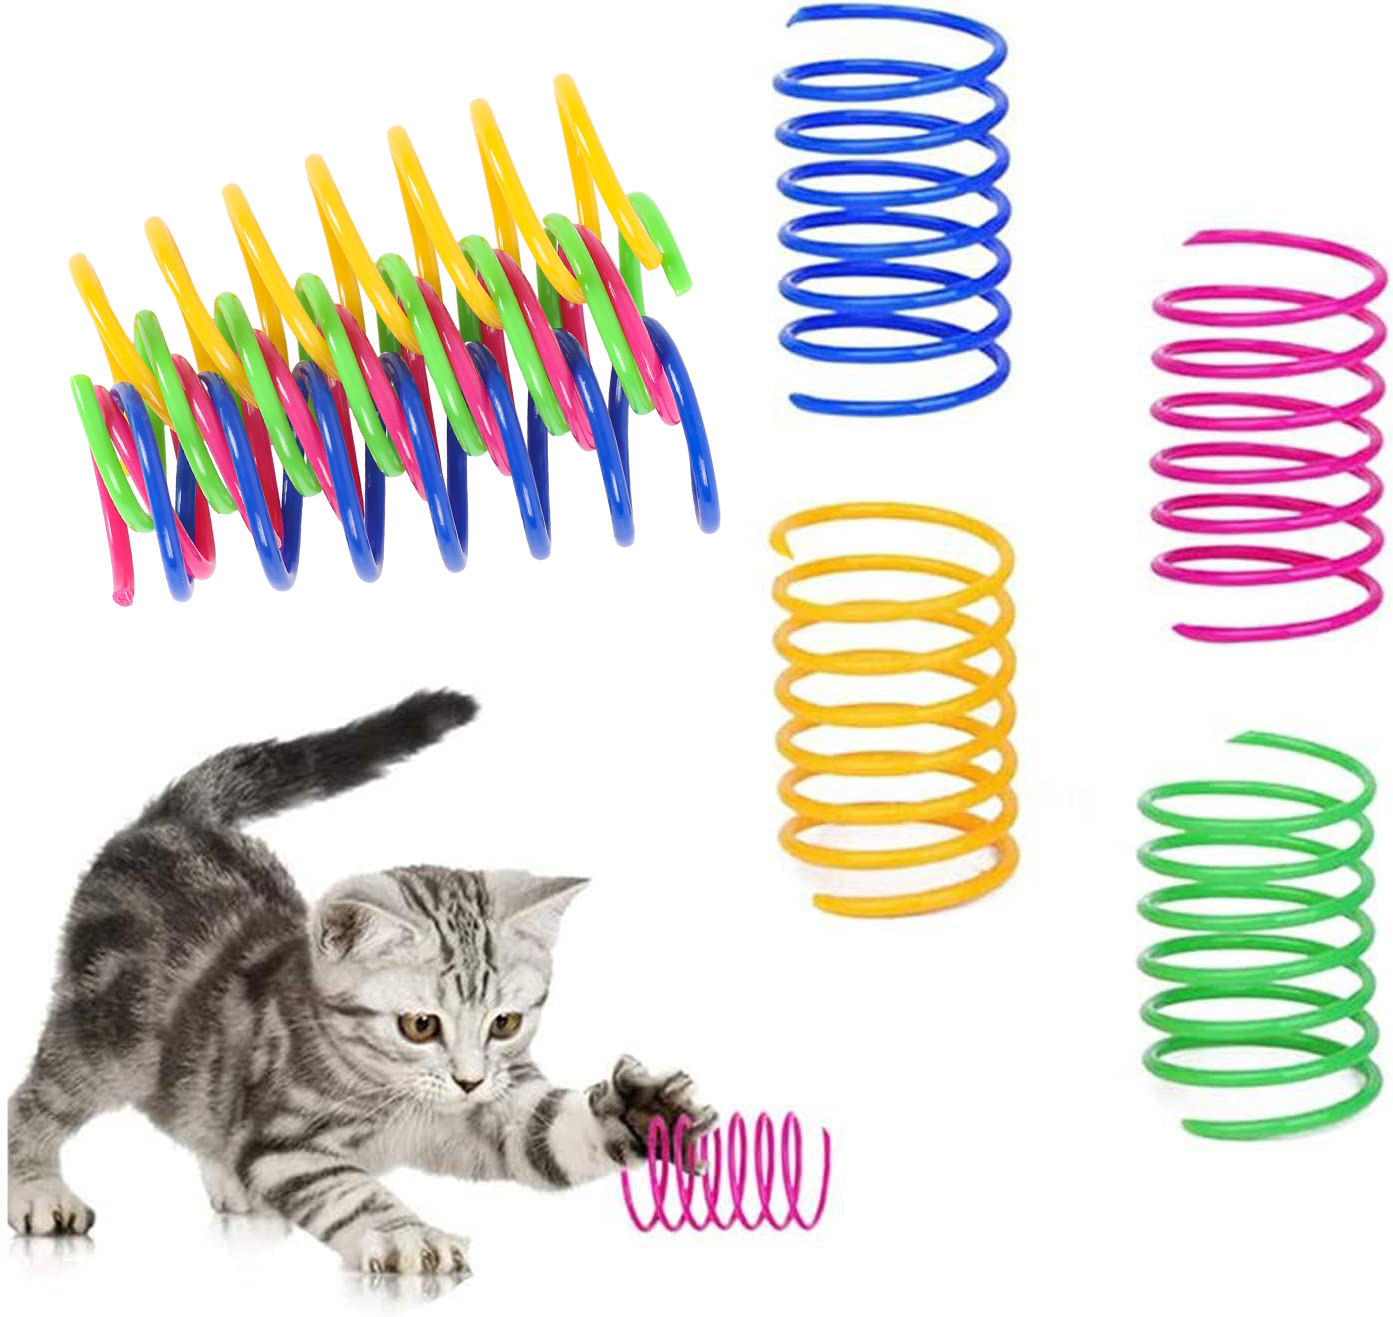 Διαδραστικό παιχνίδι για γάτες με ανθεκτικό πλαστικό σπιράλ ελατηρίου 4 συσκευασιών